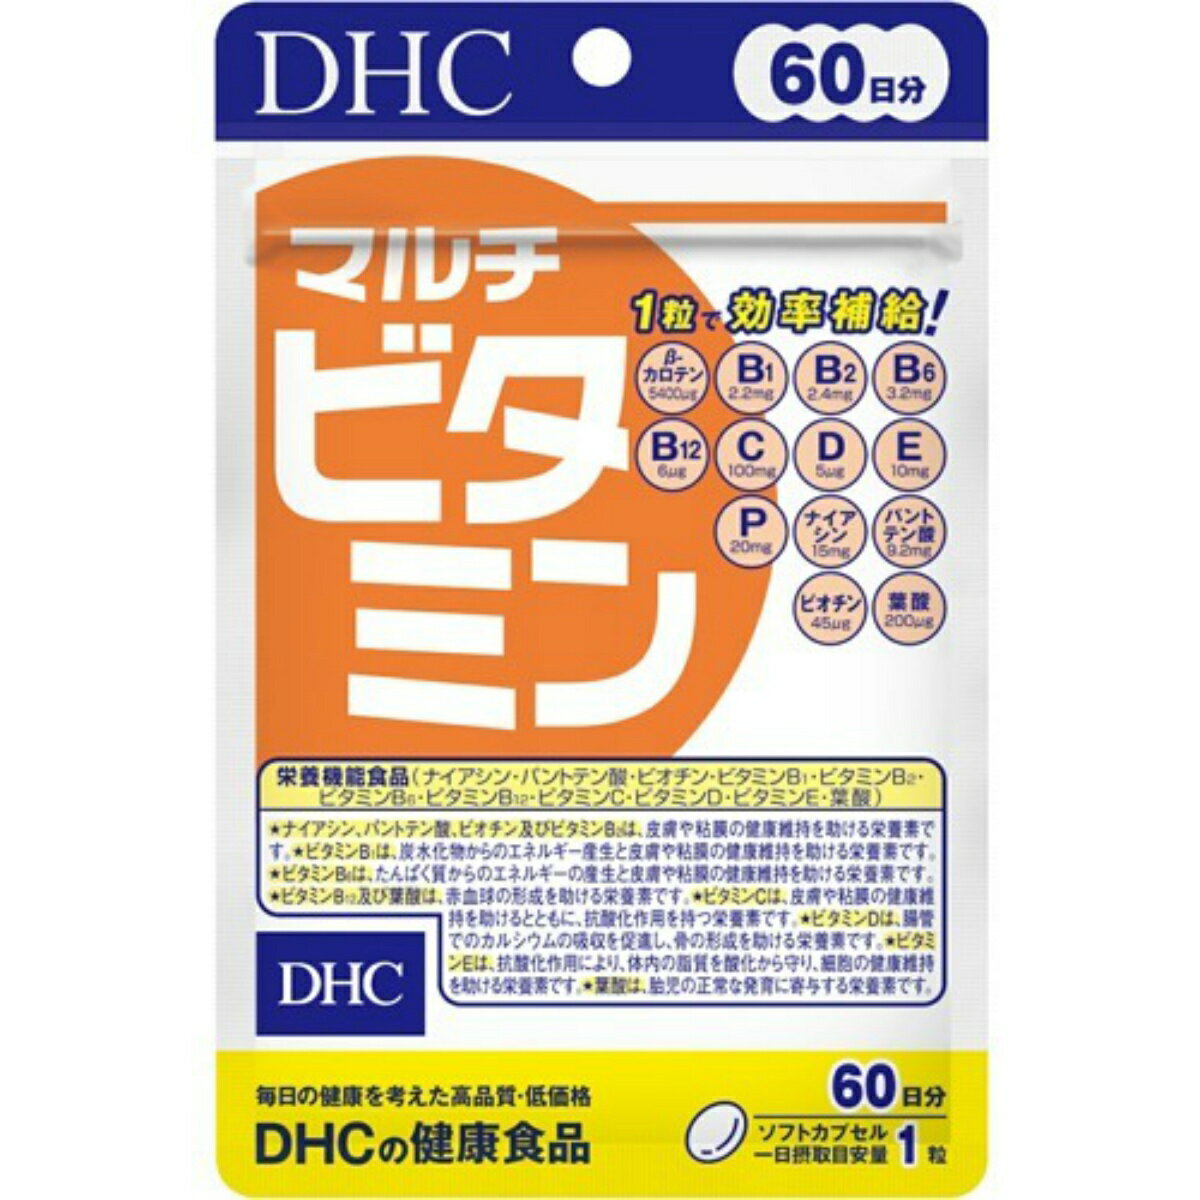 【送料込・まとめ買い×6個セット】DHC マルチビタミン 60日 60粒 サプリメント 栄養機能食品 1